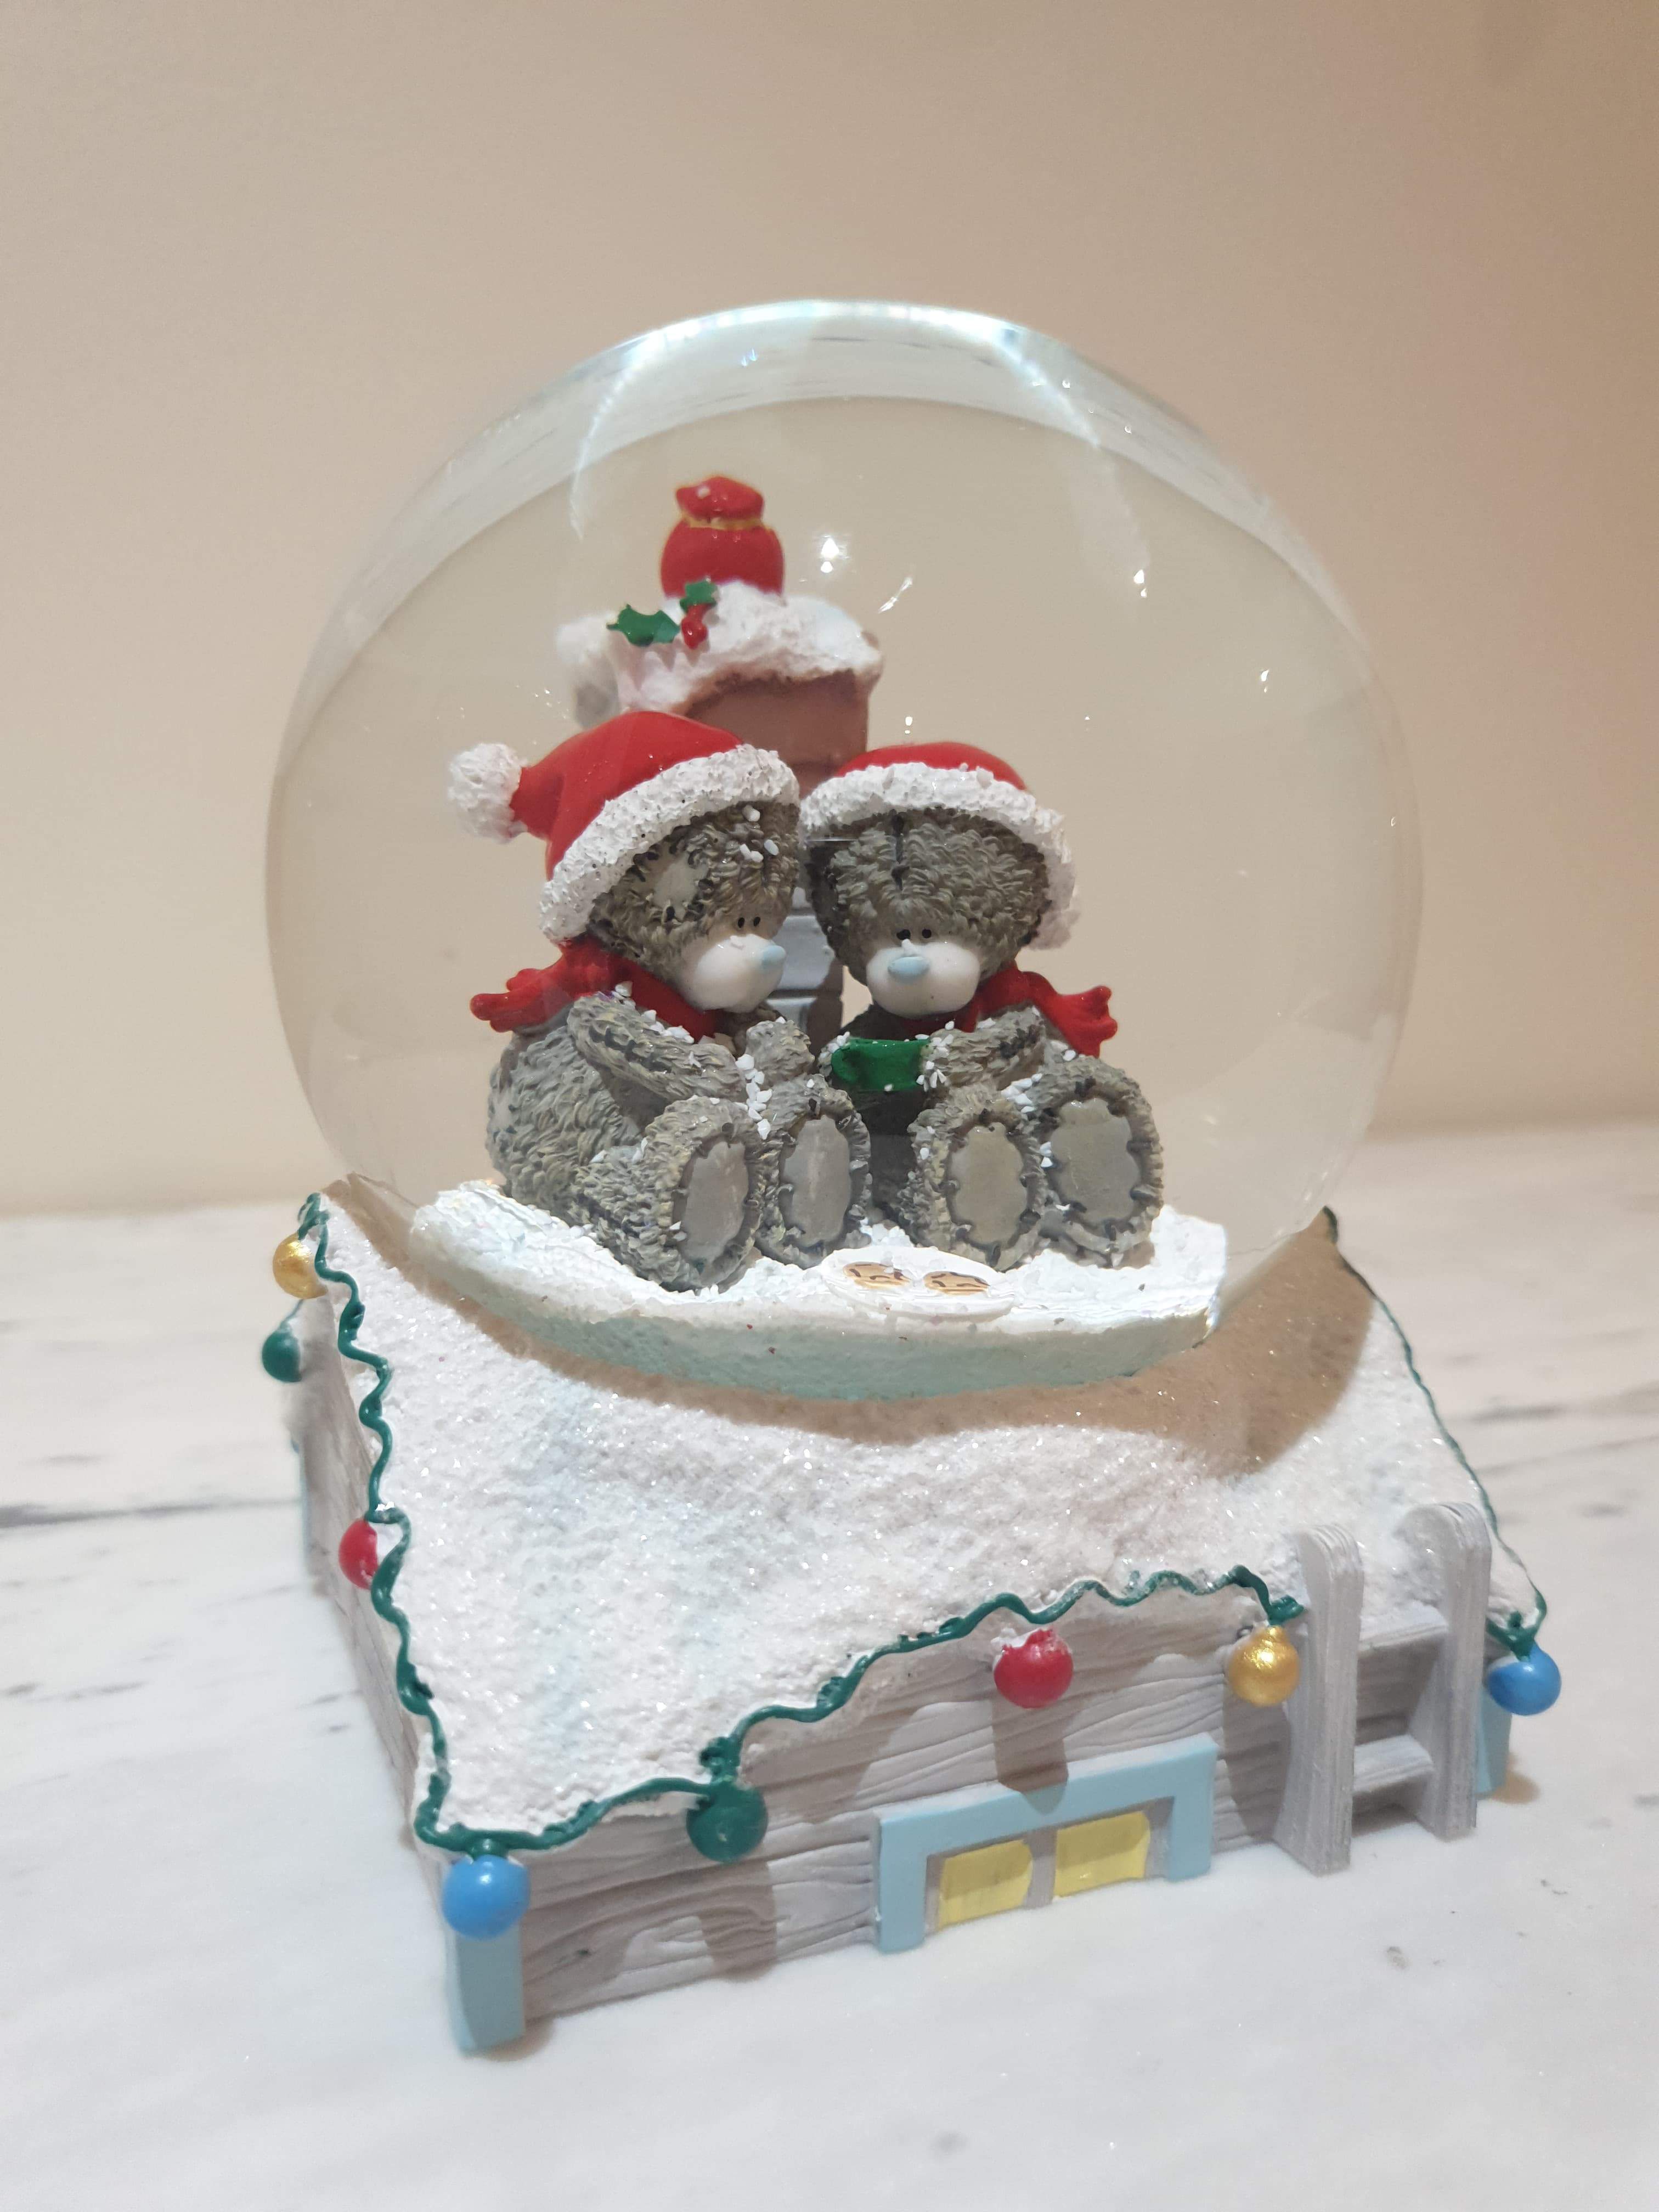 Christmas Gift - Snow Globe